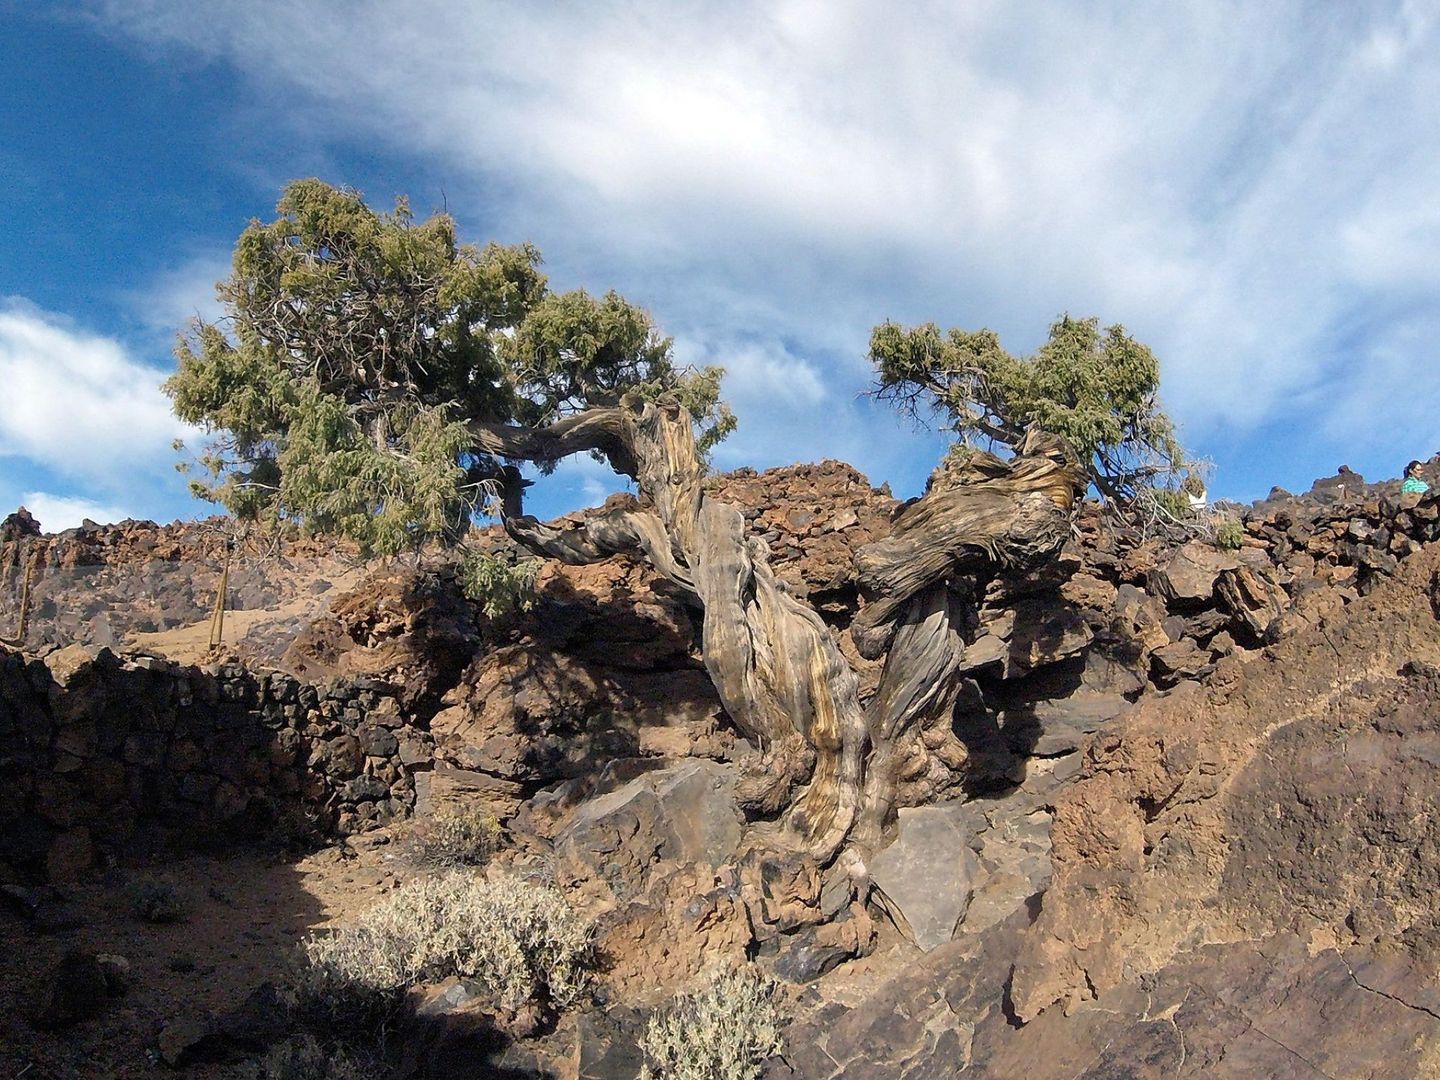  Imagen cedida por el Cabildo de Tenerife del ejemplar de cedro canario, denominado el 'Patriarca' por los conocedores del Parque Nacional del Teide.